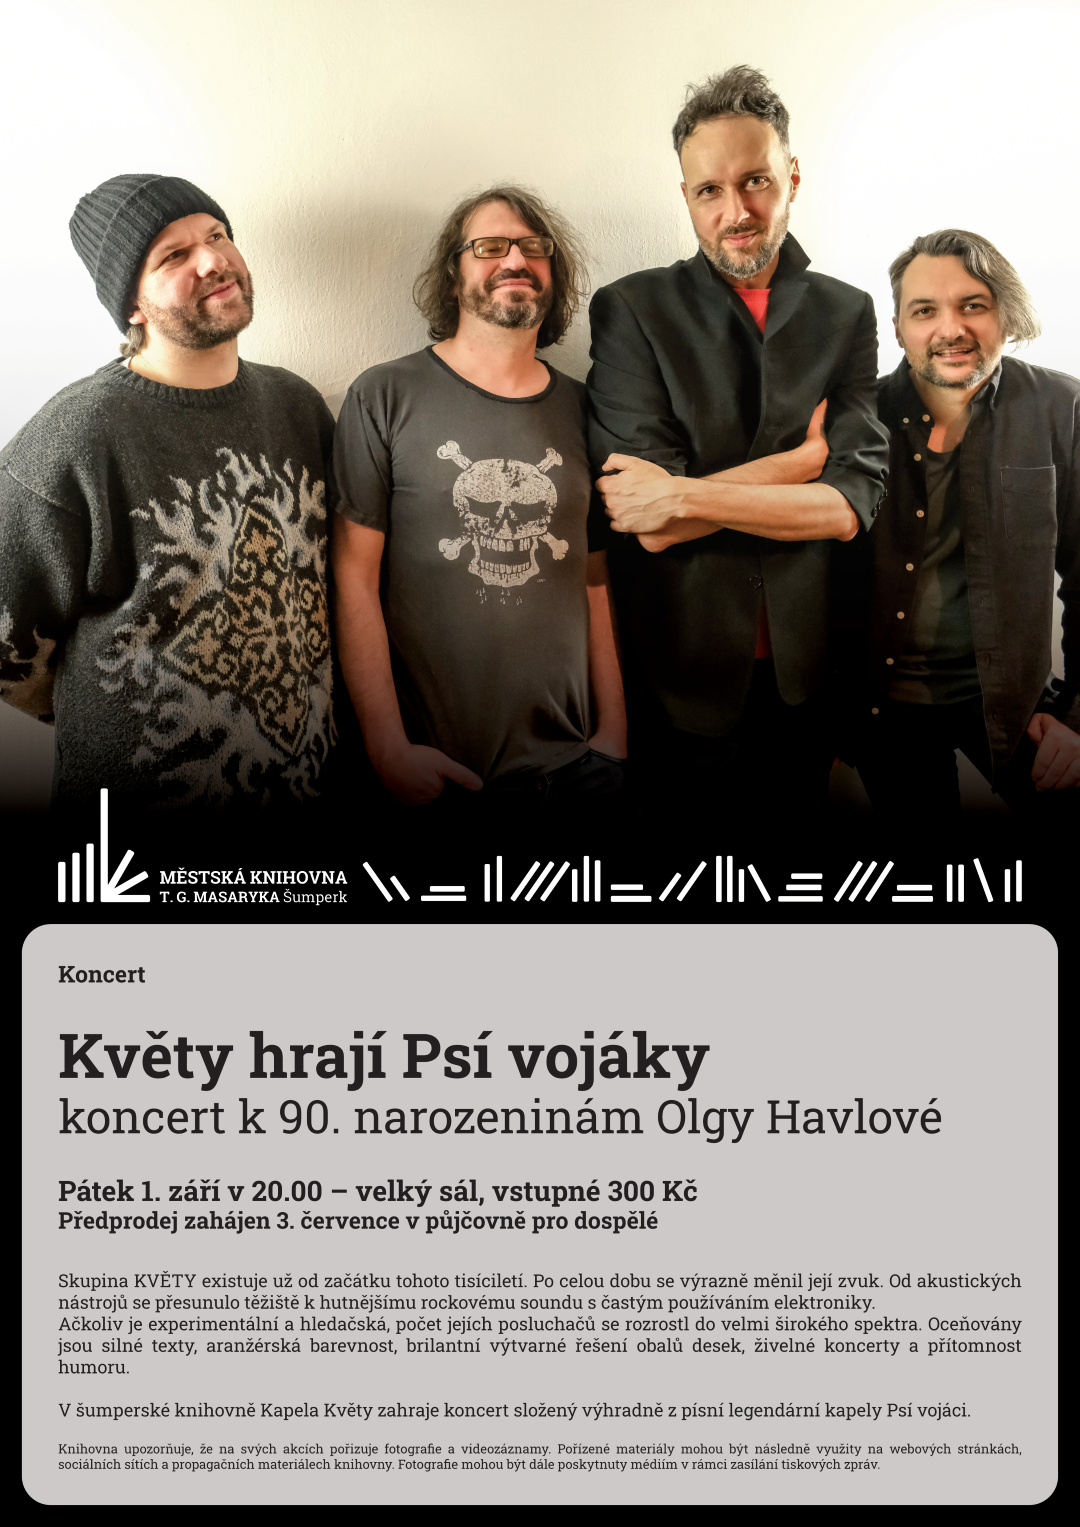 Plakát pro koncert Květy hrají psí vojáky k 90. narozeninám Olgy Havlové